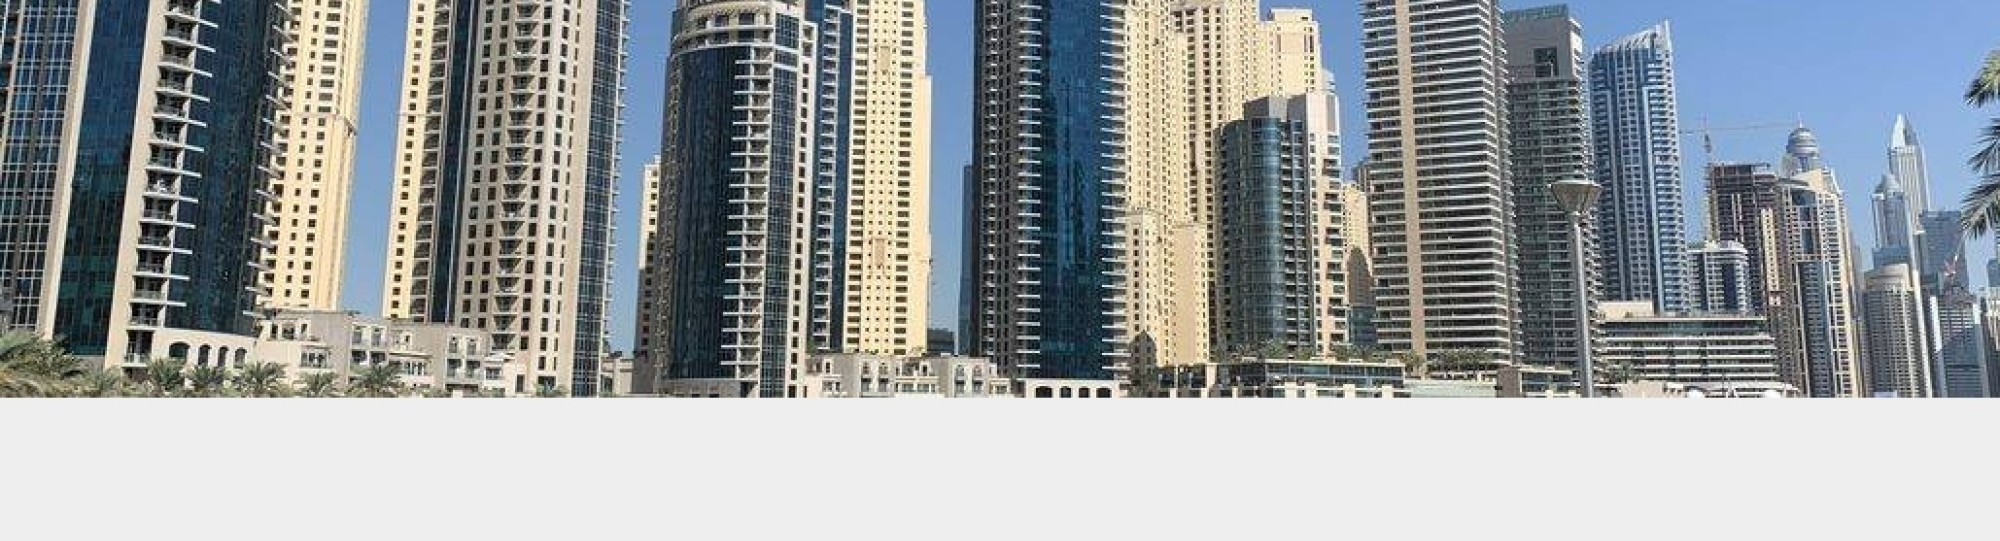 De gebouwen van Emaar in Dubai